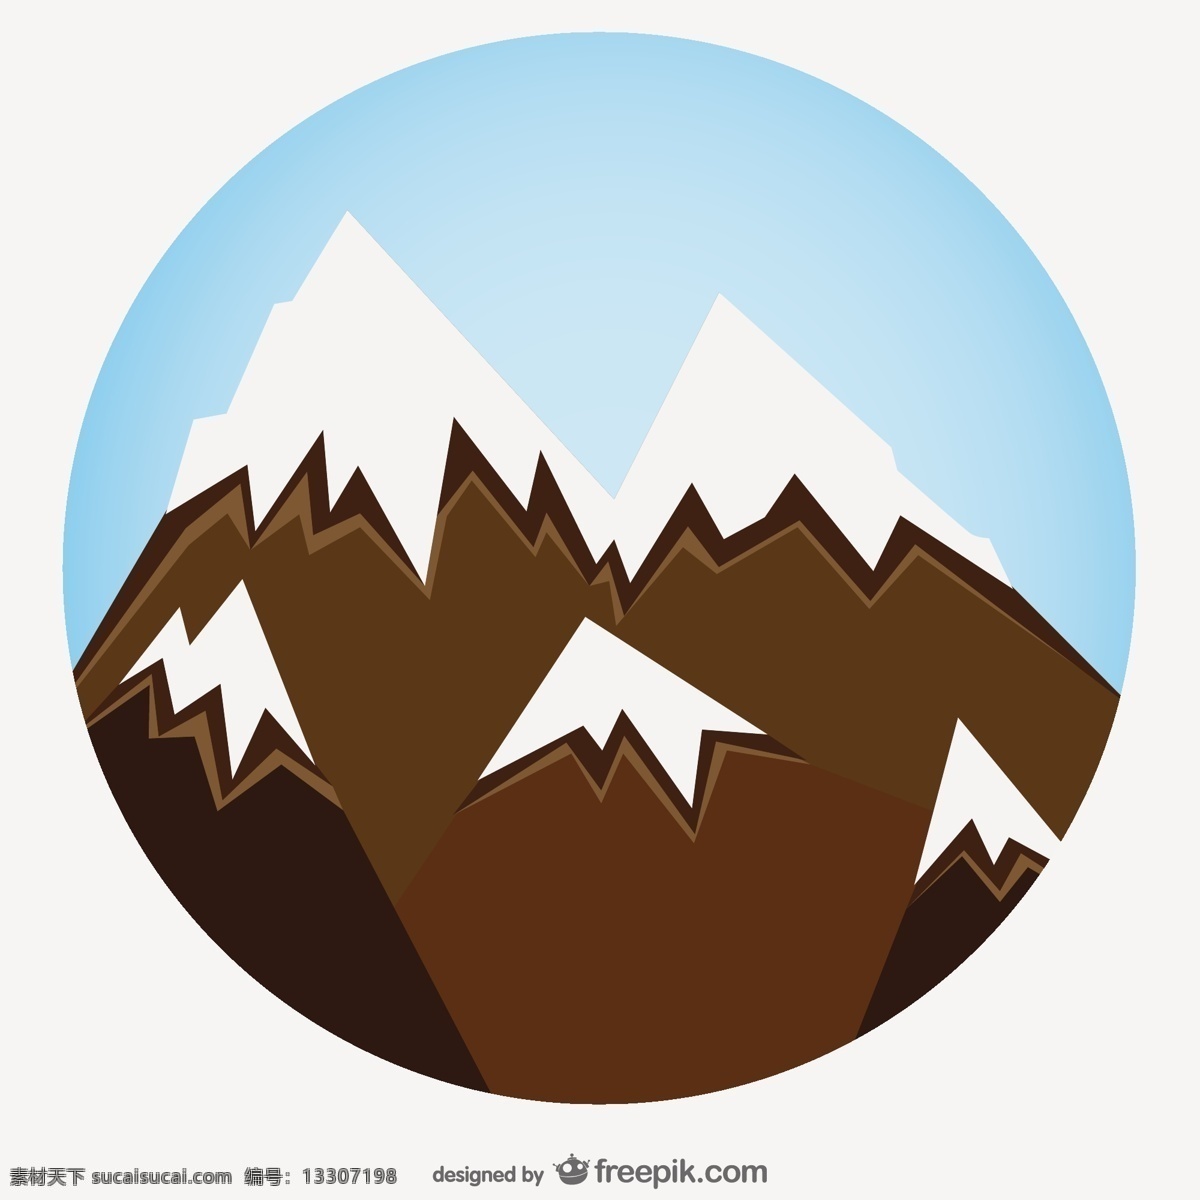 雪山变焦艺术 背景 标志 标签 徽章 邮票 山 模板 雪 美术 图形 绘图 山脉 缩放 编辑 雪的背景 logo模板 雪山 白色